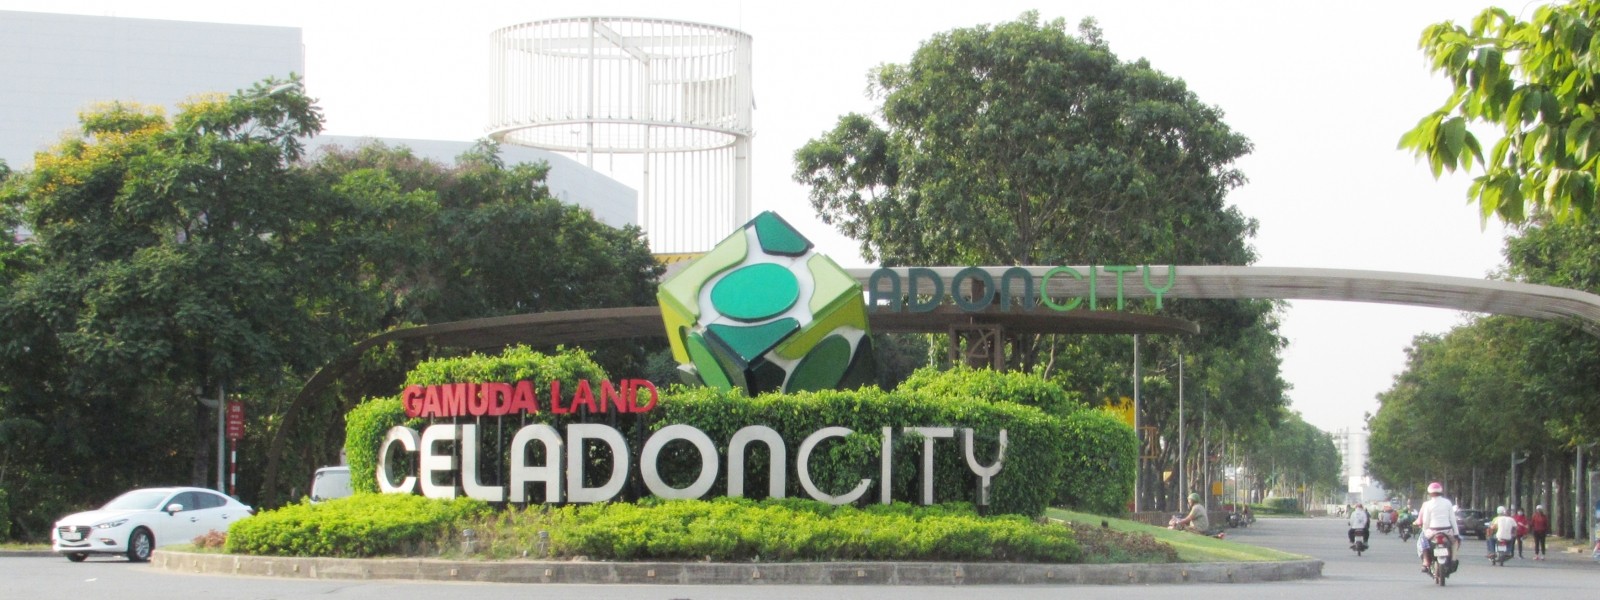 
Lối vào Khu liên hợp thể dục thể thao và dân cư Tân Thắng (Celadon City).
